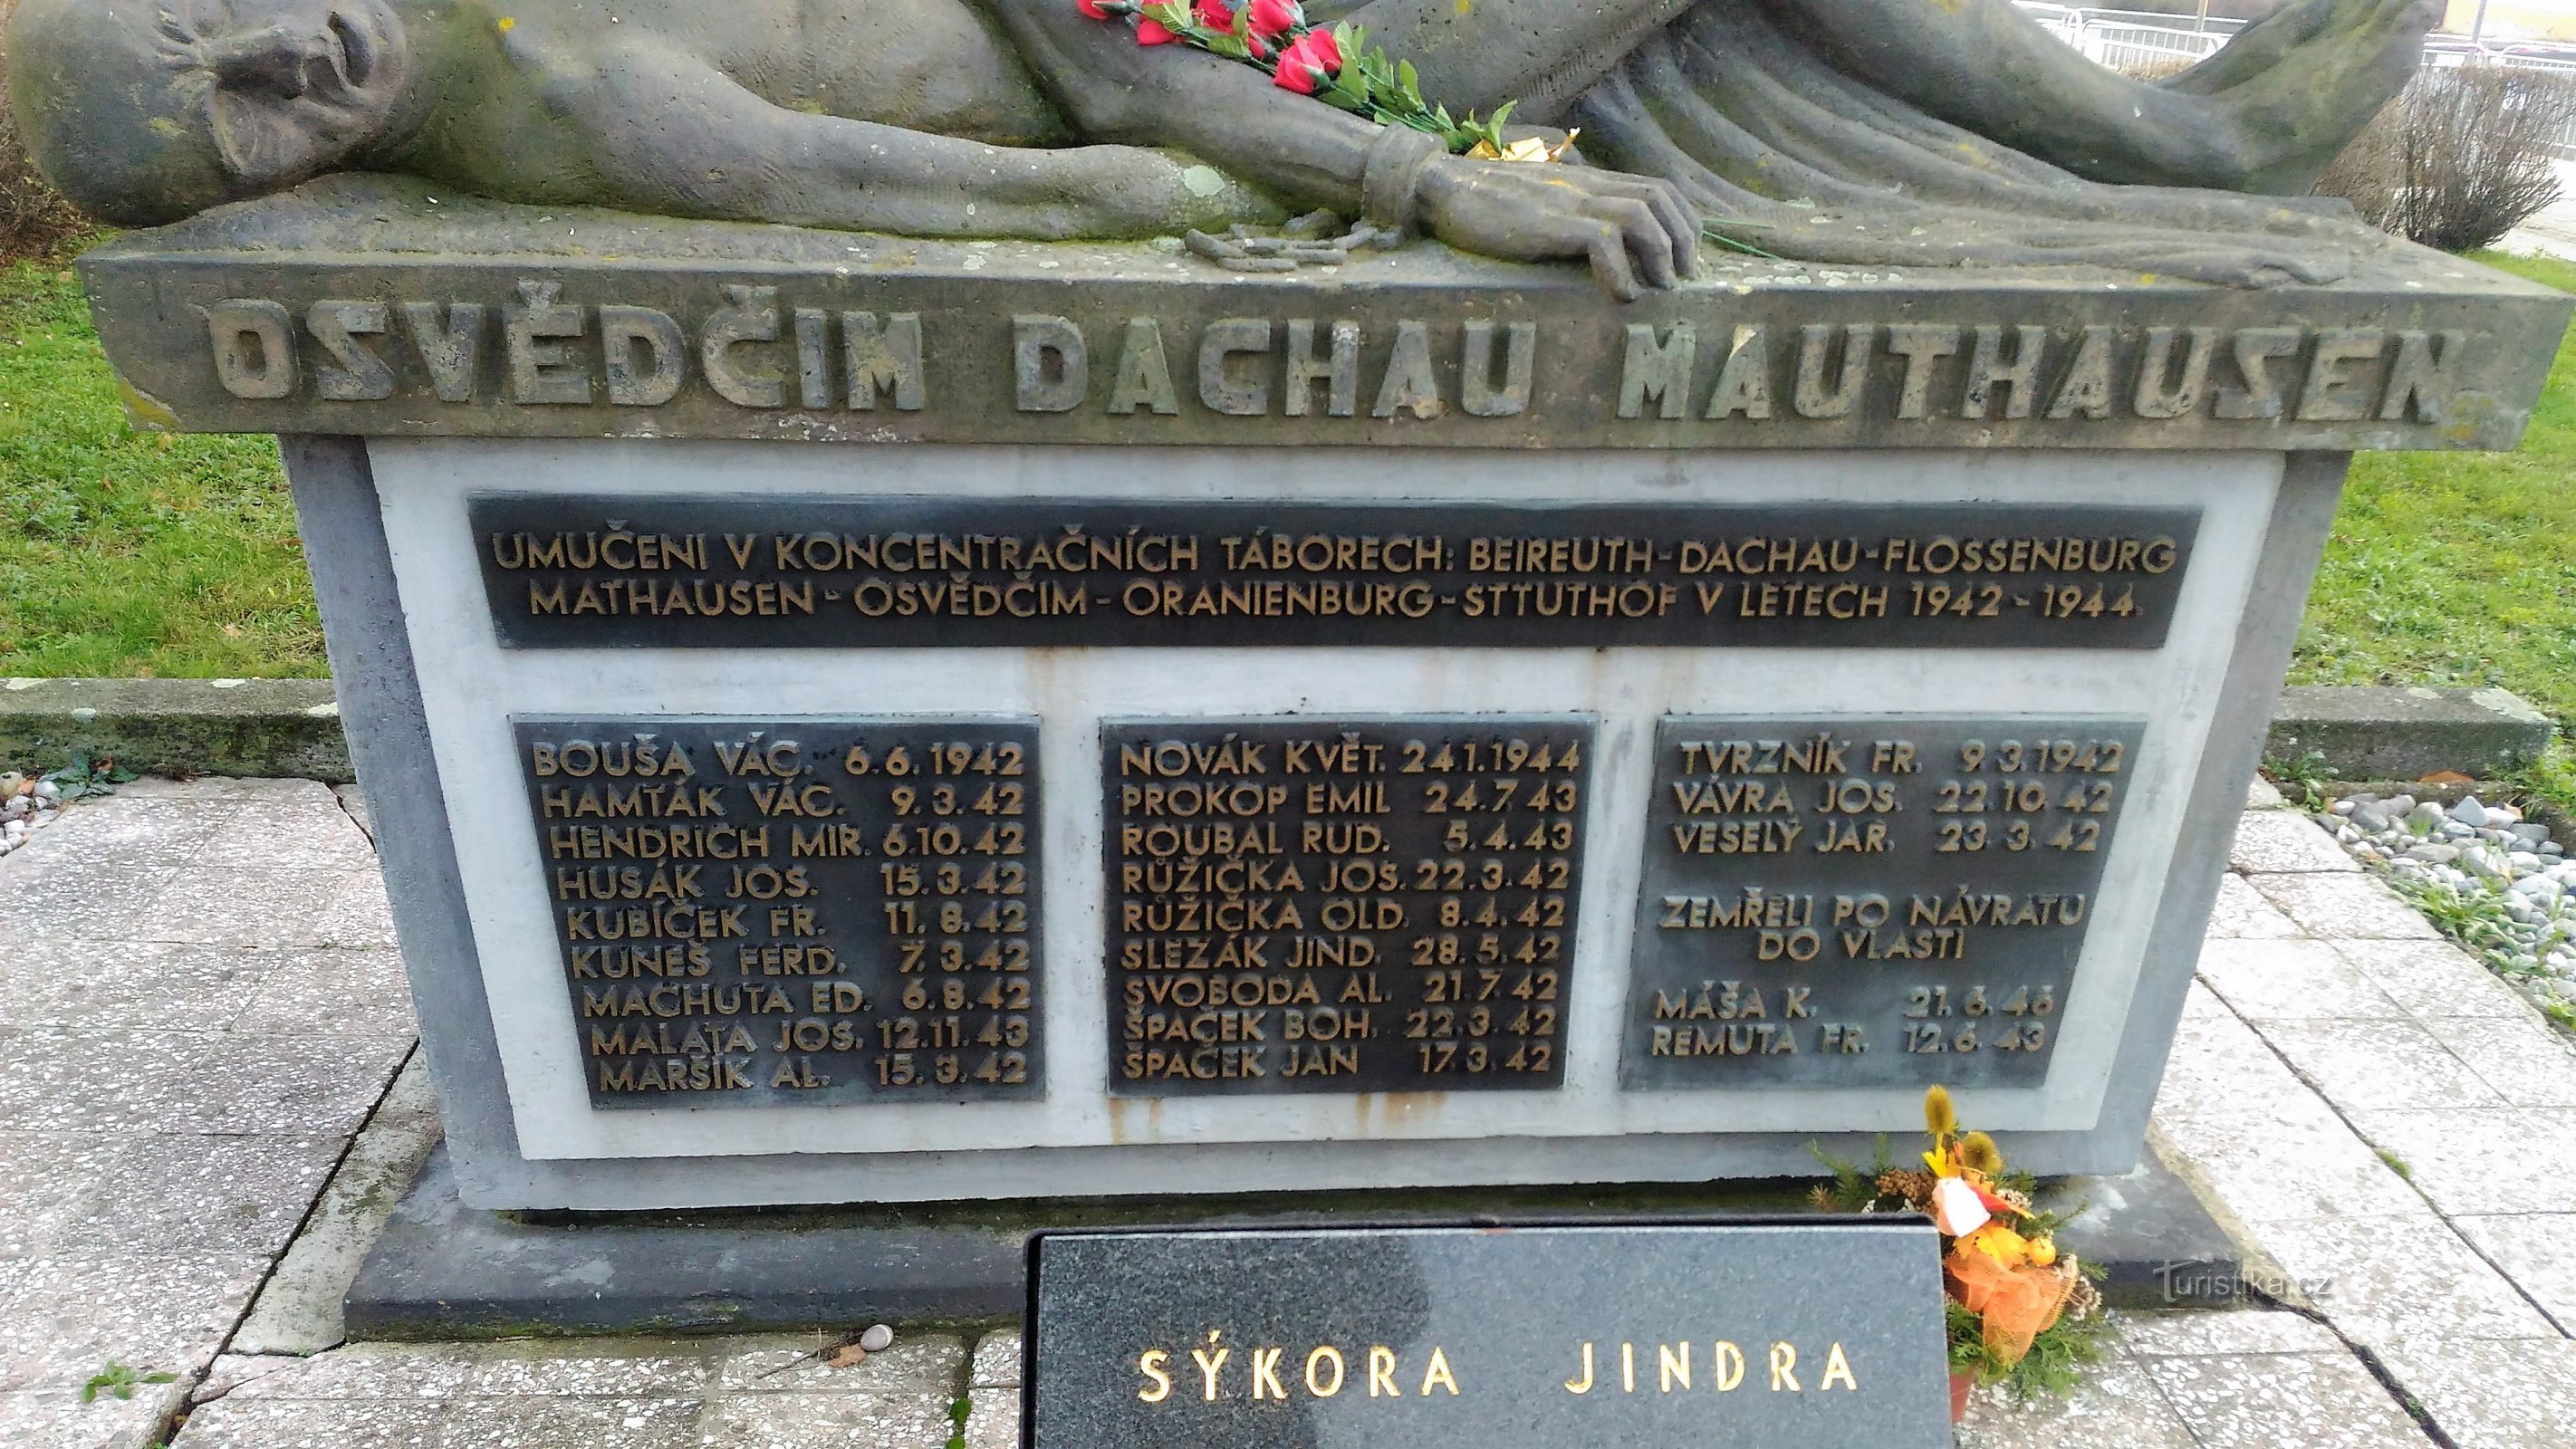 Keskitysleirien uhrien muistomerkki